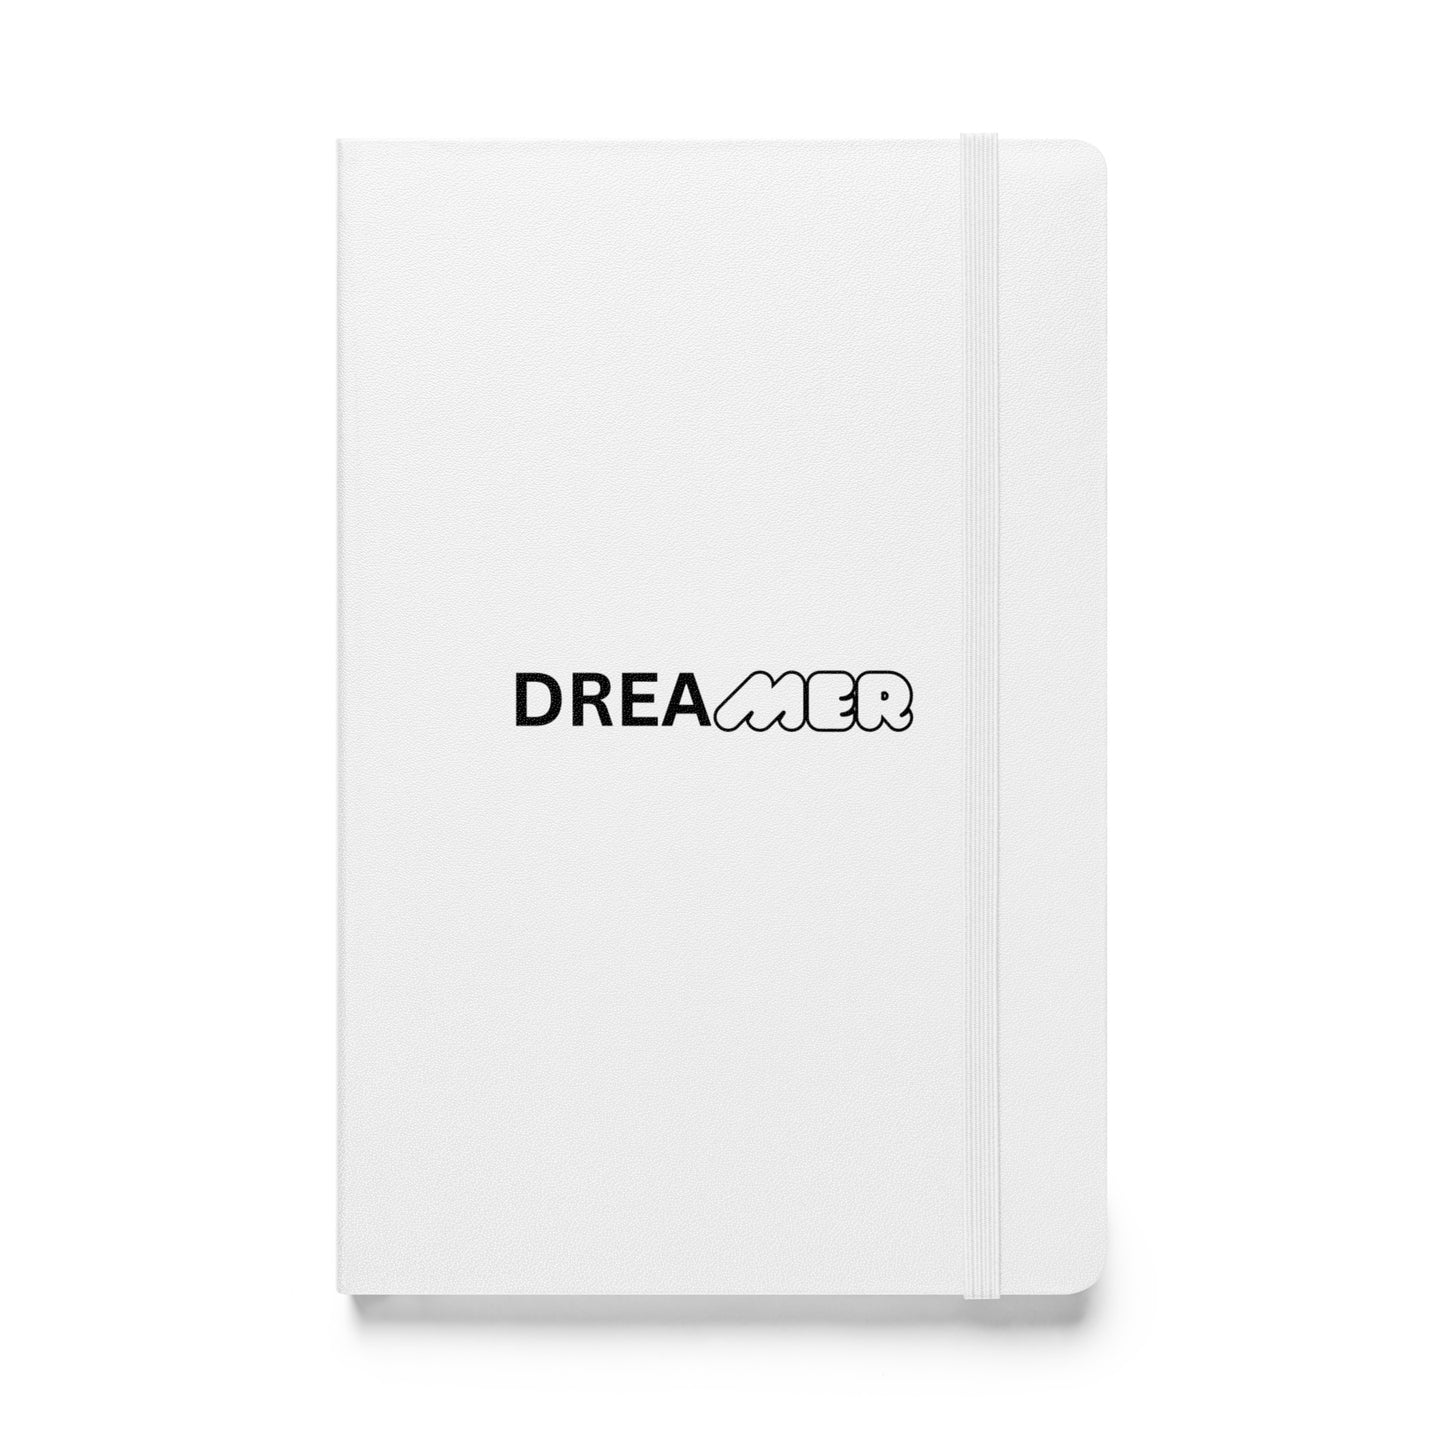 Dreamer Hardcover Notebook